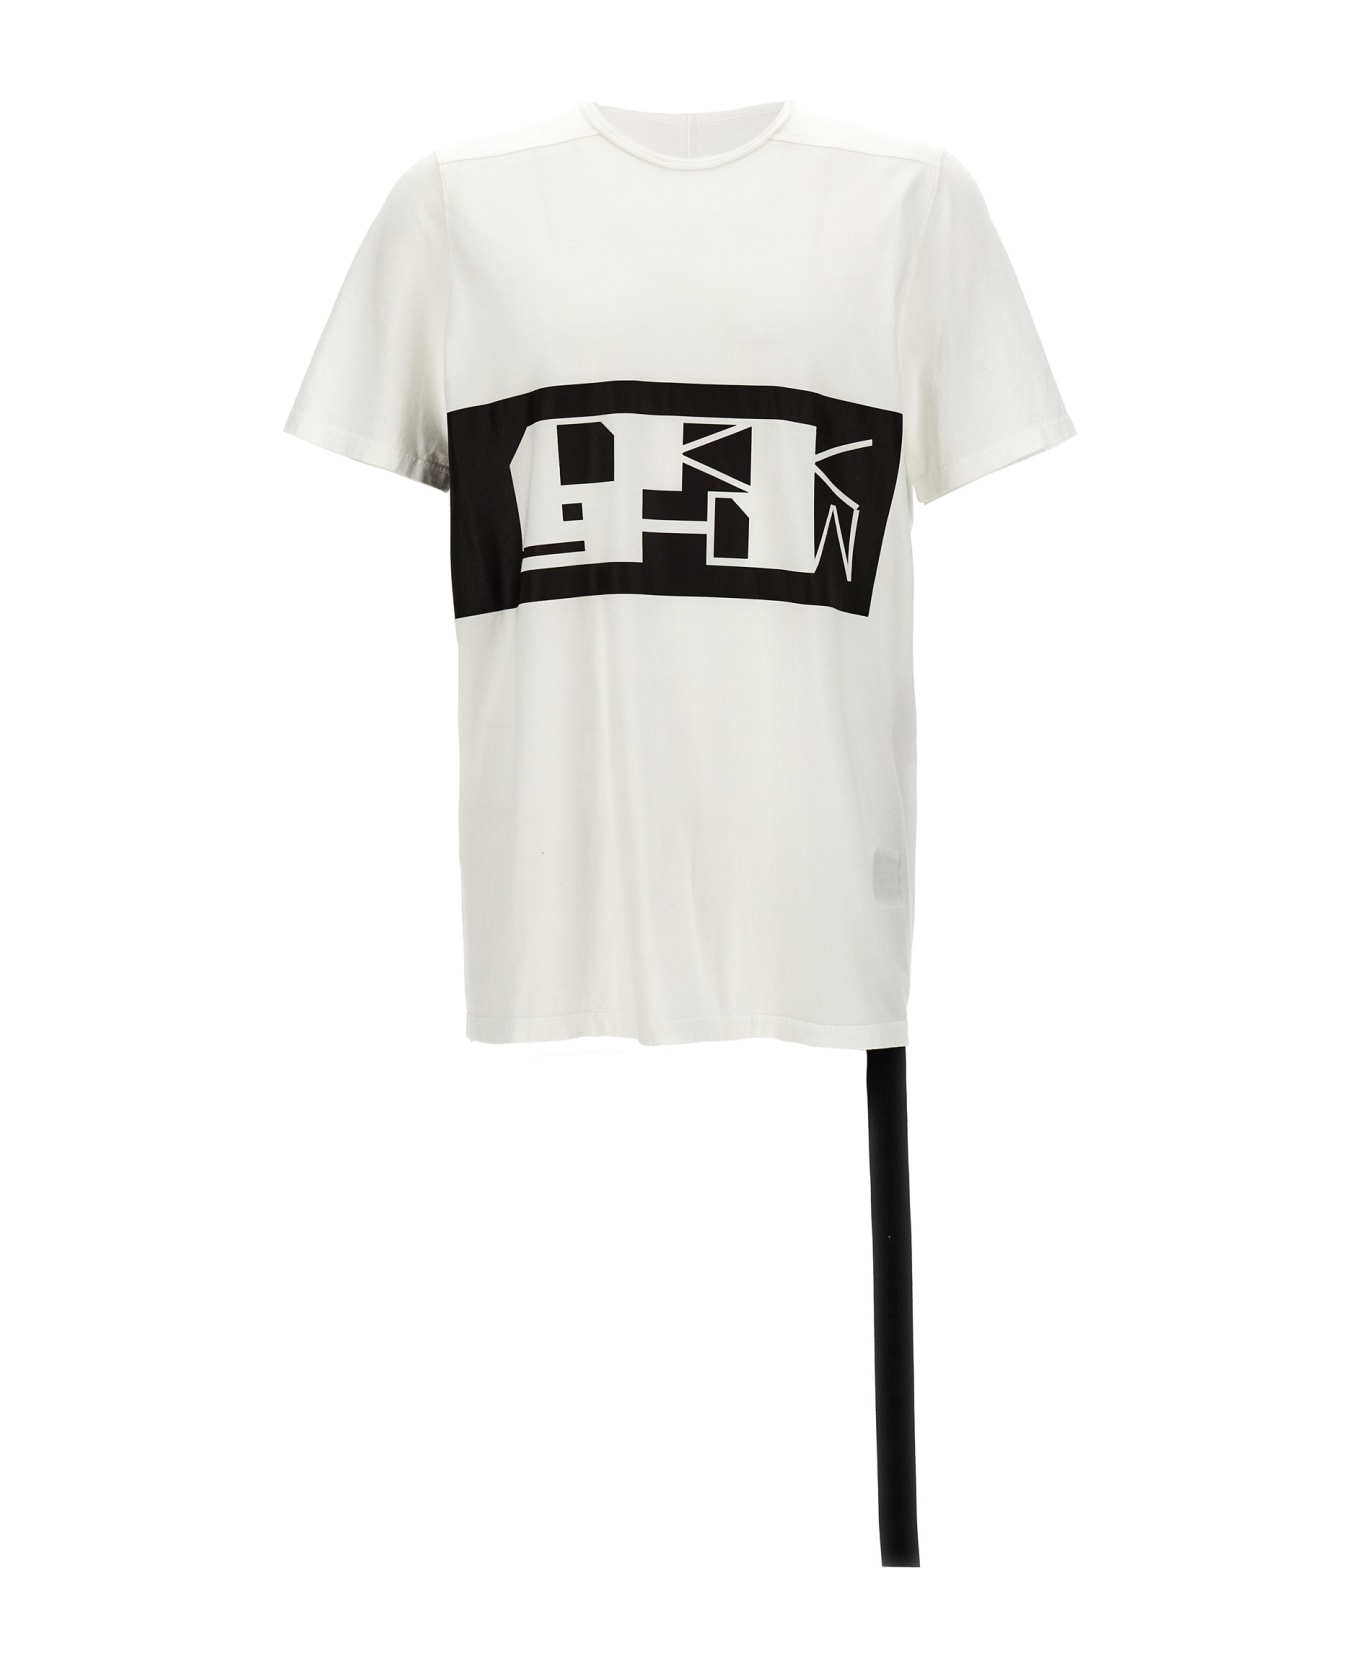 DRKSHDW 'level T' T-shirt - White/Black シャツ